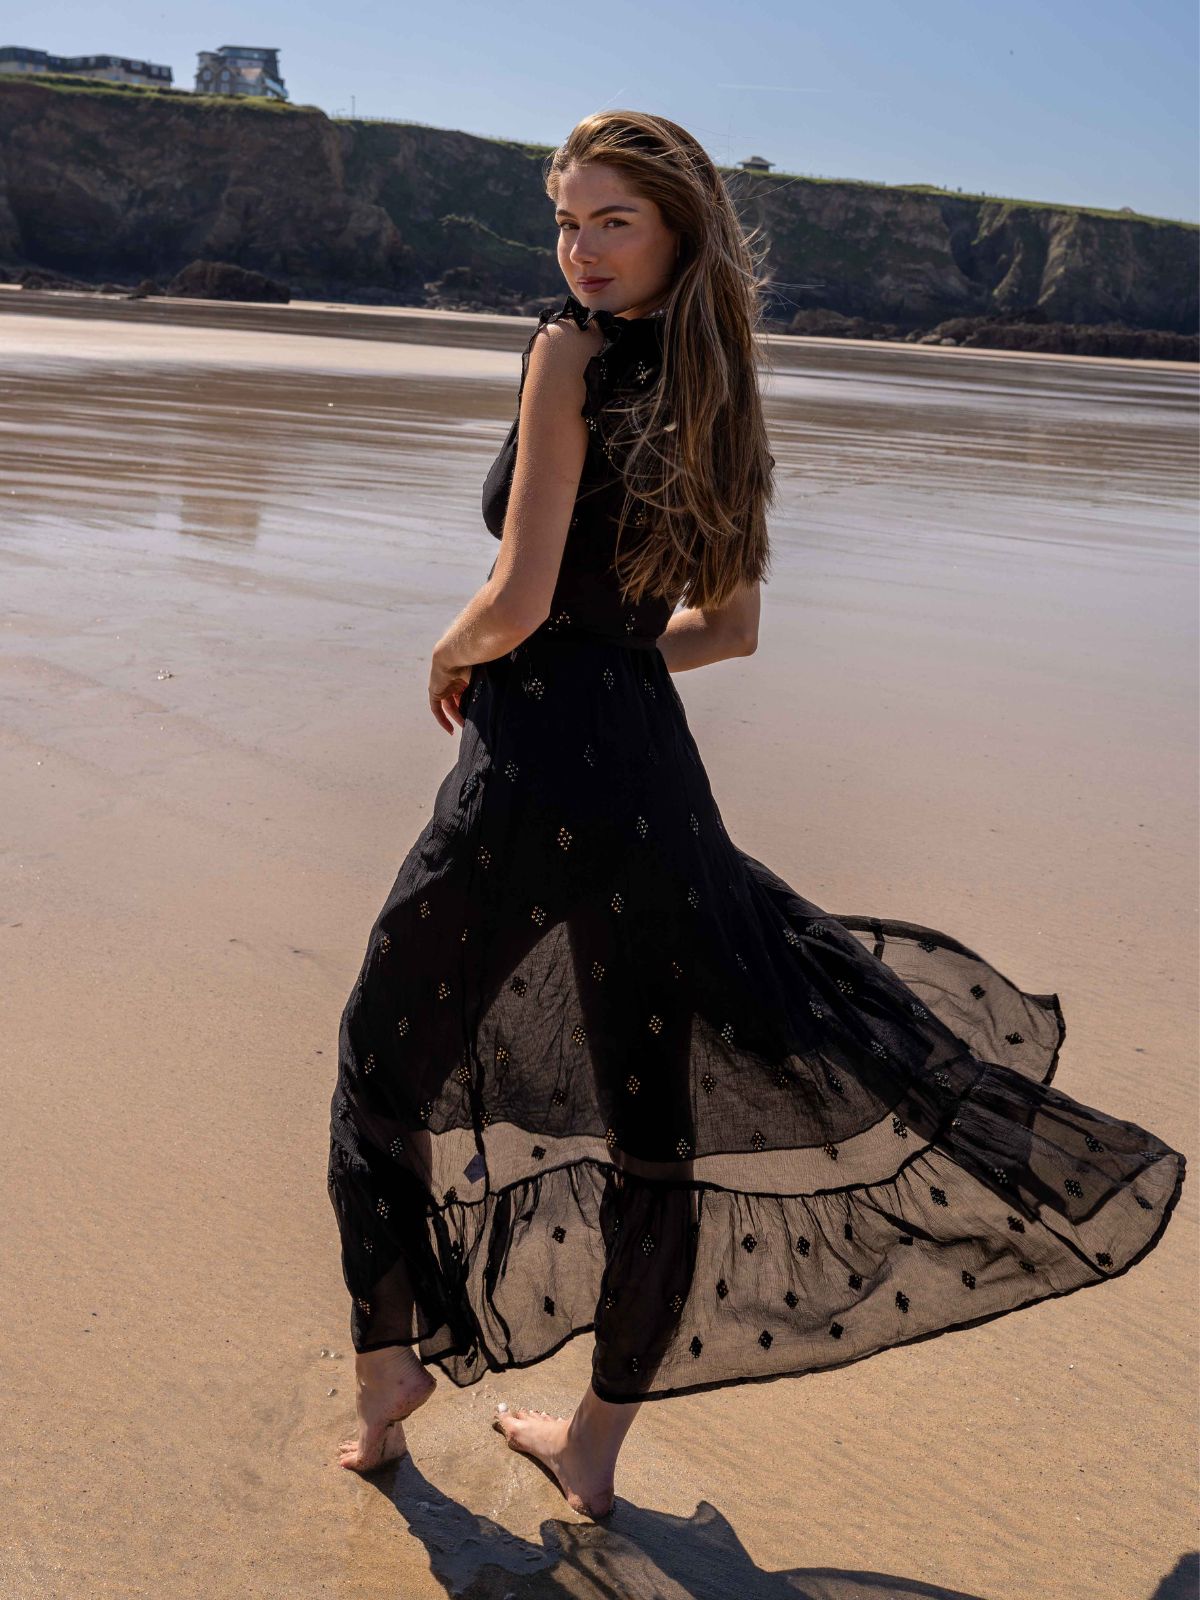 South Beach Lagos Sequin Wrap Midi Beach Dress / Black